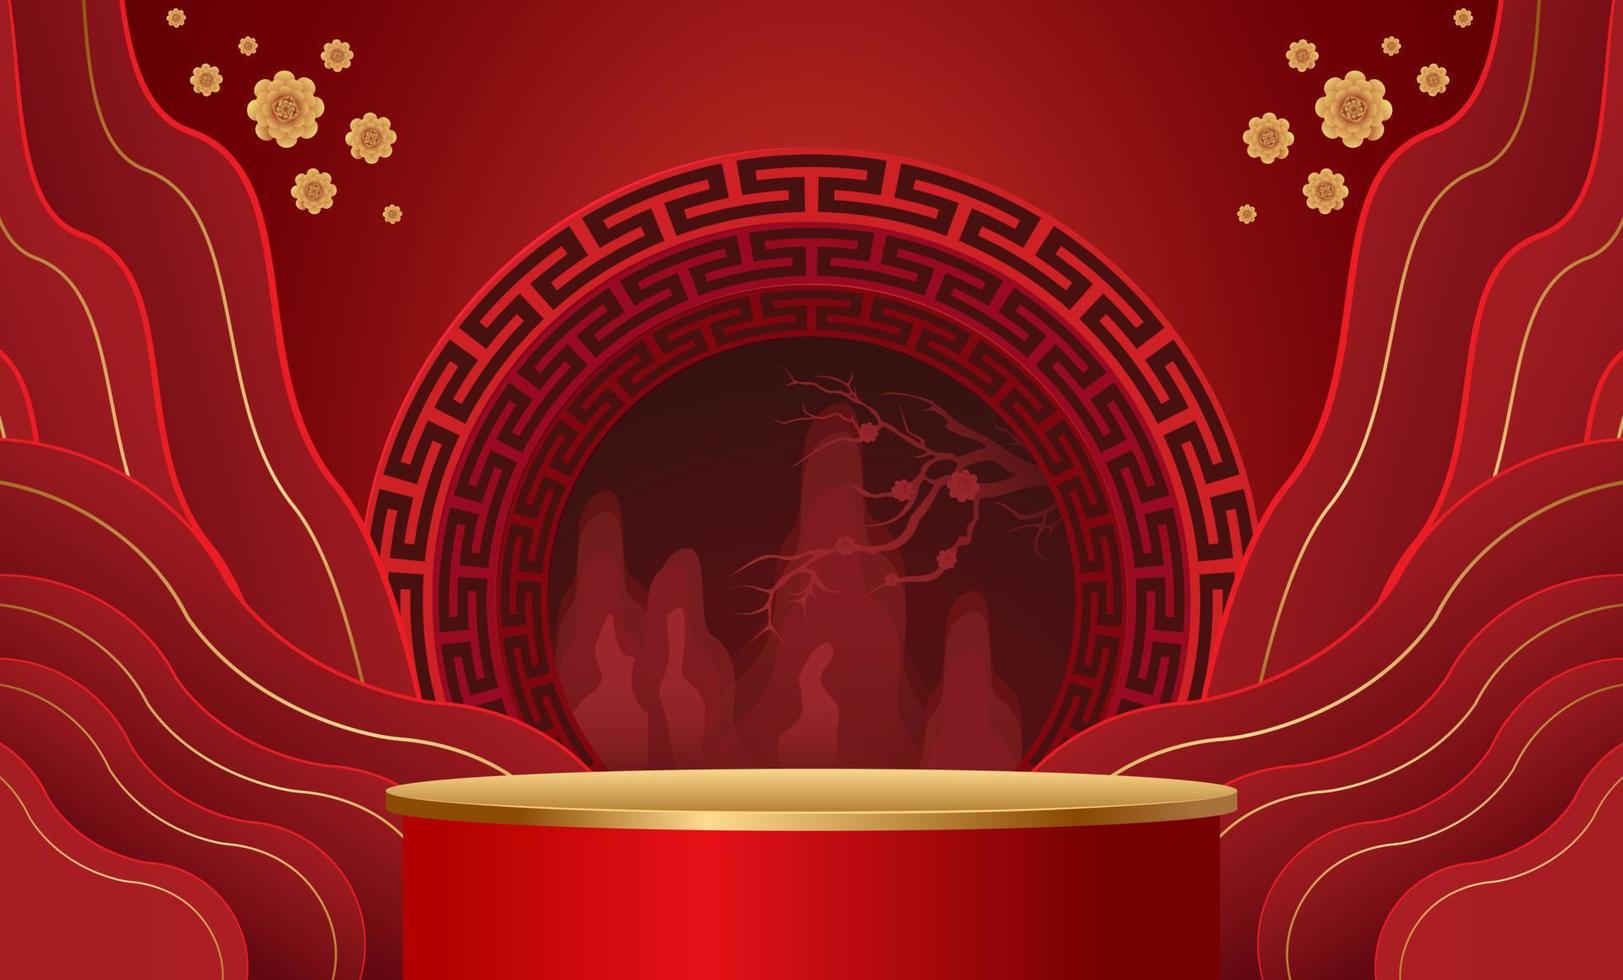 podium en achtergrond voor chinees nieuwjaar, chinese festivals, medio herfstfestival, bloem en aziatische elementen op de achtergrond. vector